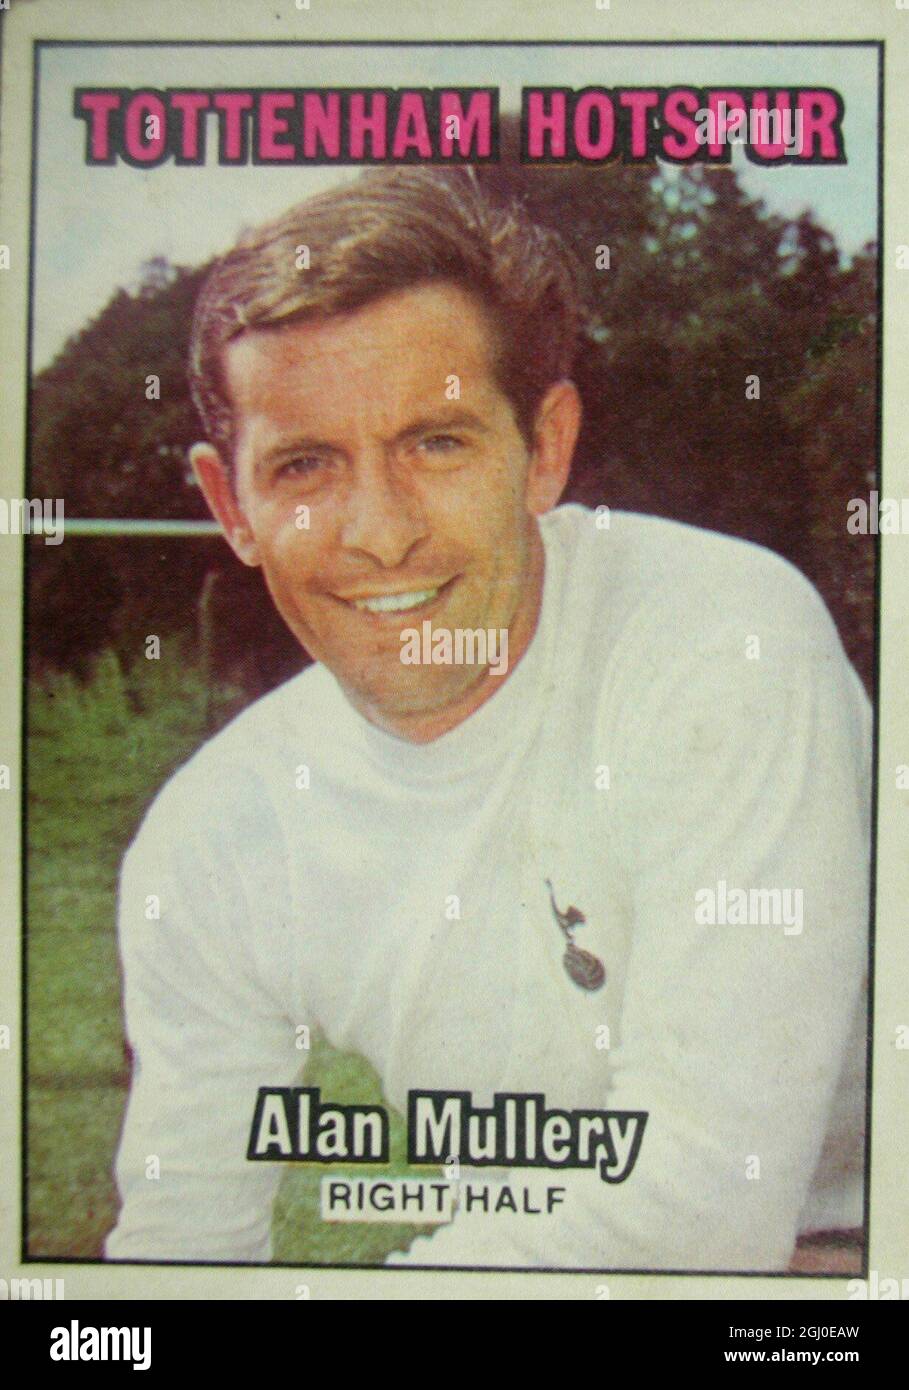 Alan Mullery - Tottenham Hotspur der Kapitän von Tottenham, Mullery, war zuvor mit dem Londoner Rivalen Fulham zusammen, bevor er im März 1964 für £72,500 zur White Hart Lane überging. Hart im Tackle ist er ein treibender Spieler, der den anderen Mitgliedern seines Teams ein großartiges Beispiel gibt und auch aus großer Entfernung einige spannende Tore erzielt hat. Stockfoto